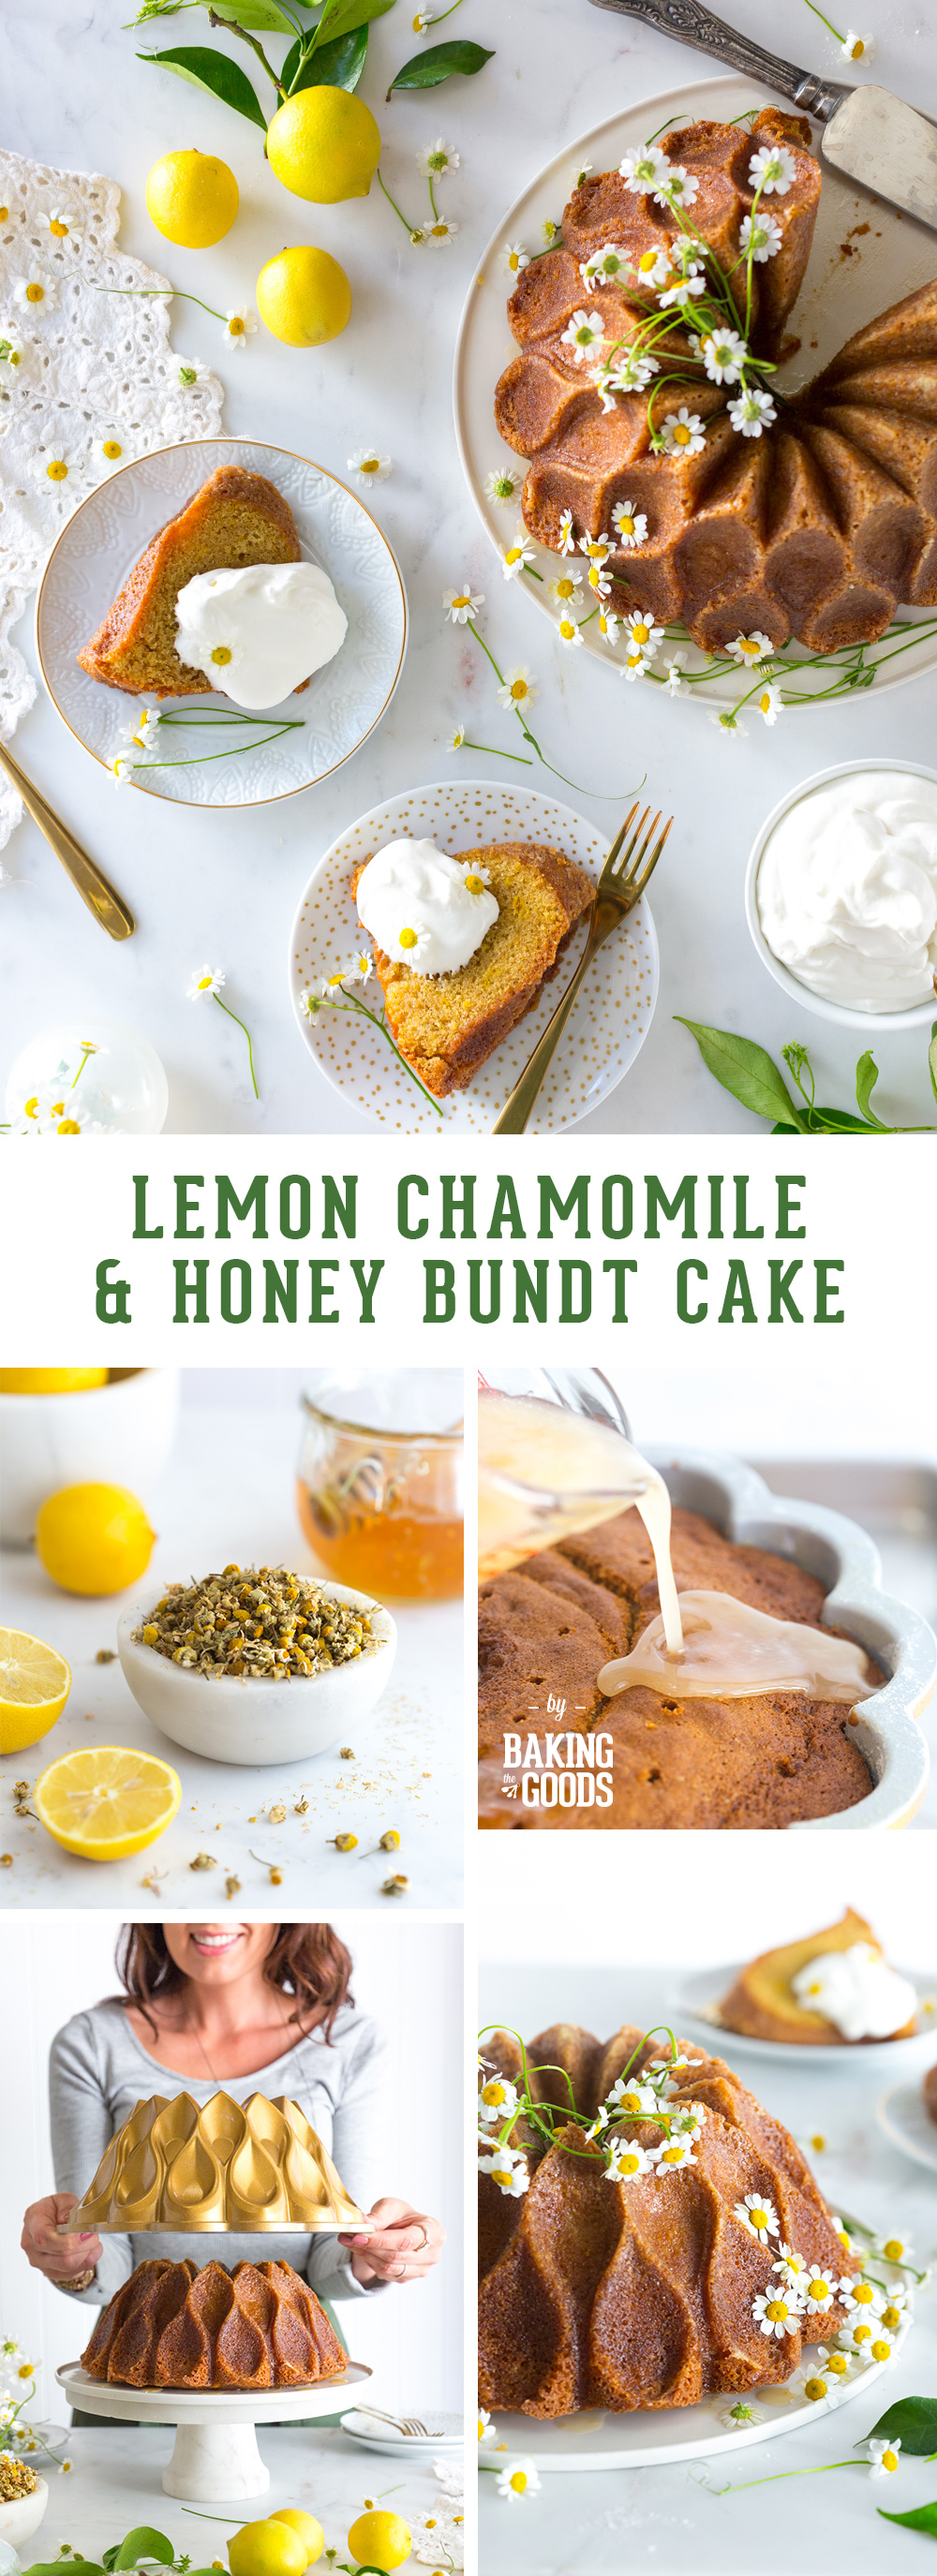 Lemon Chamomile Honey Bundt Cake by Baking The Goods